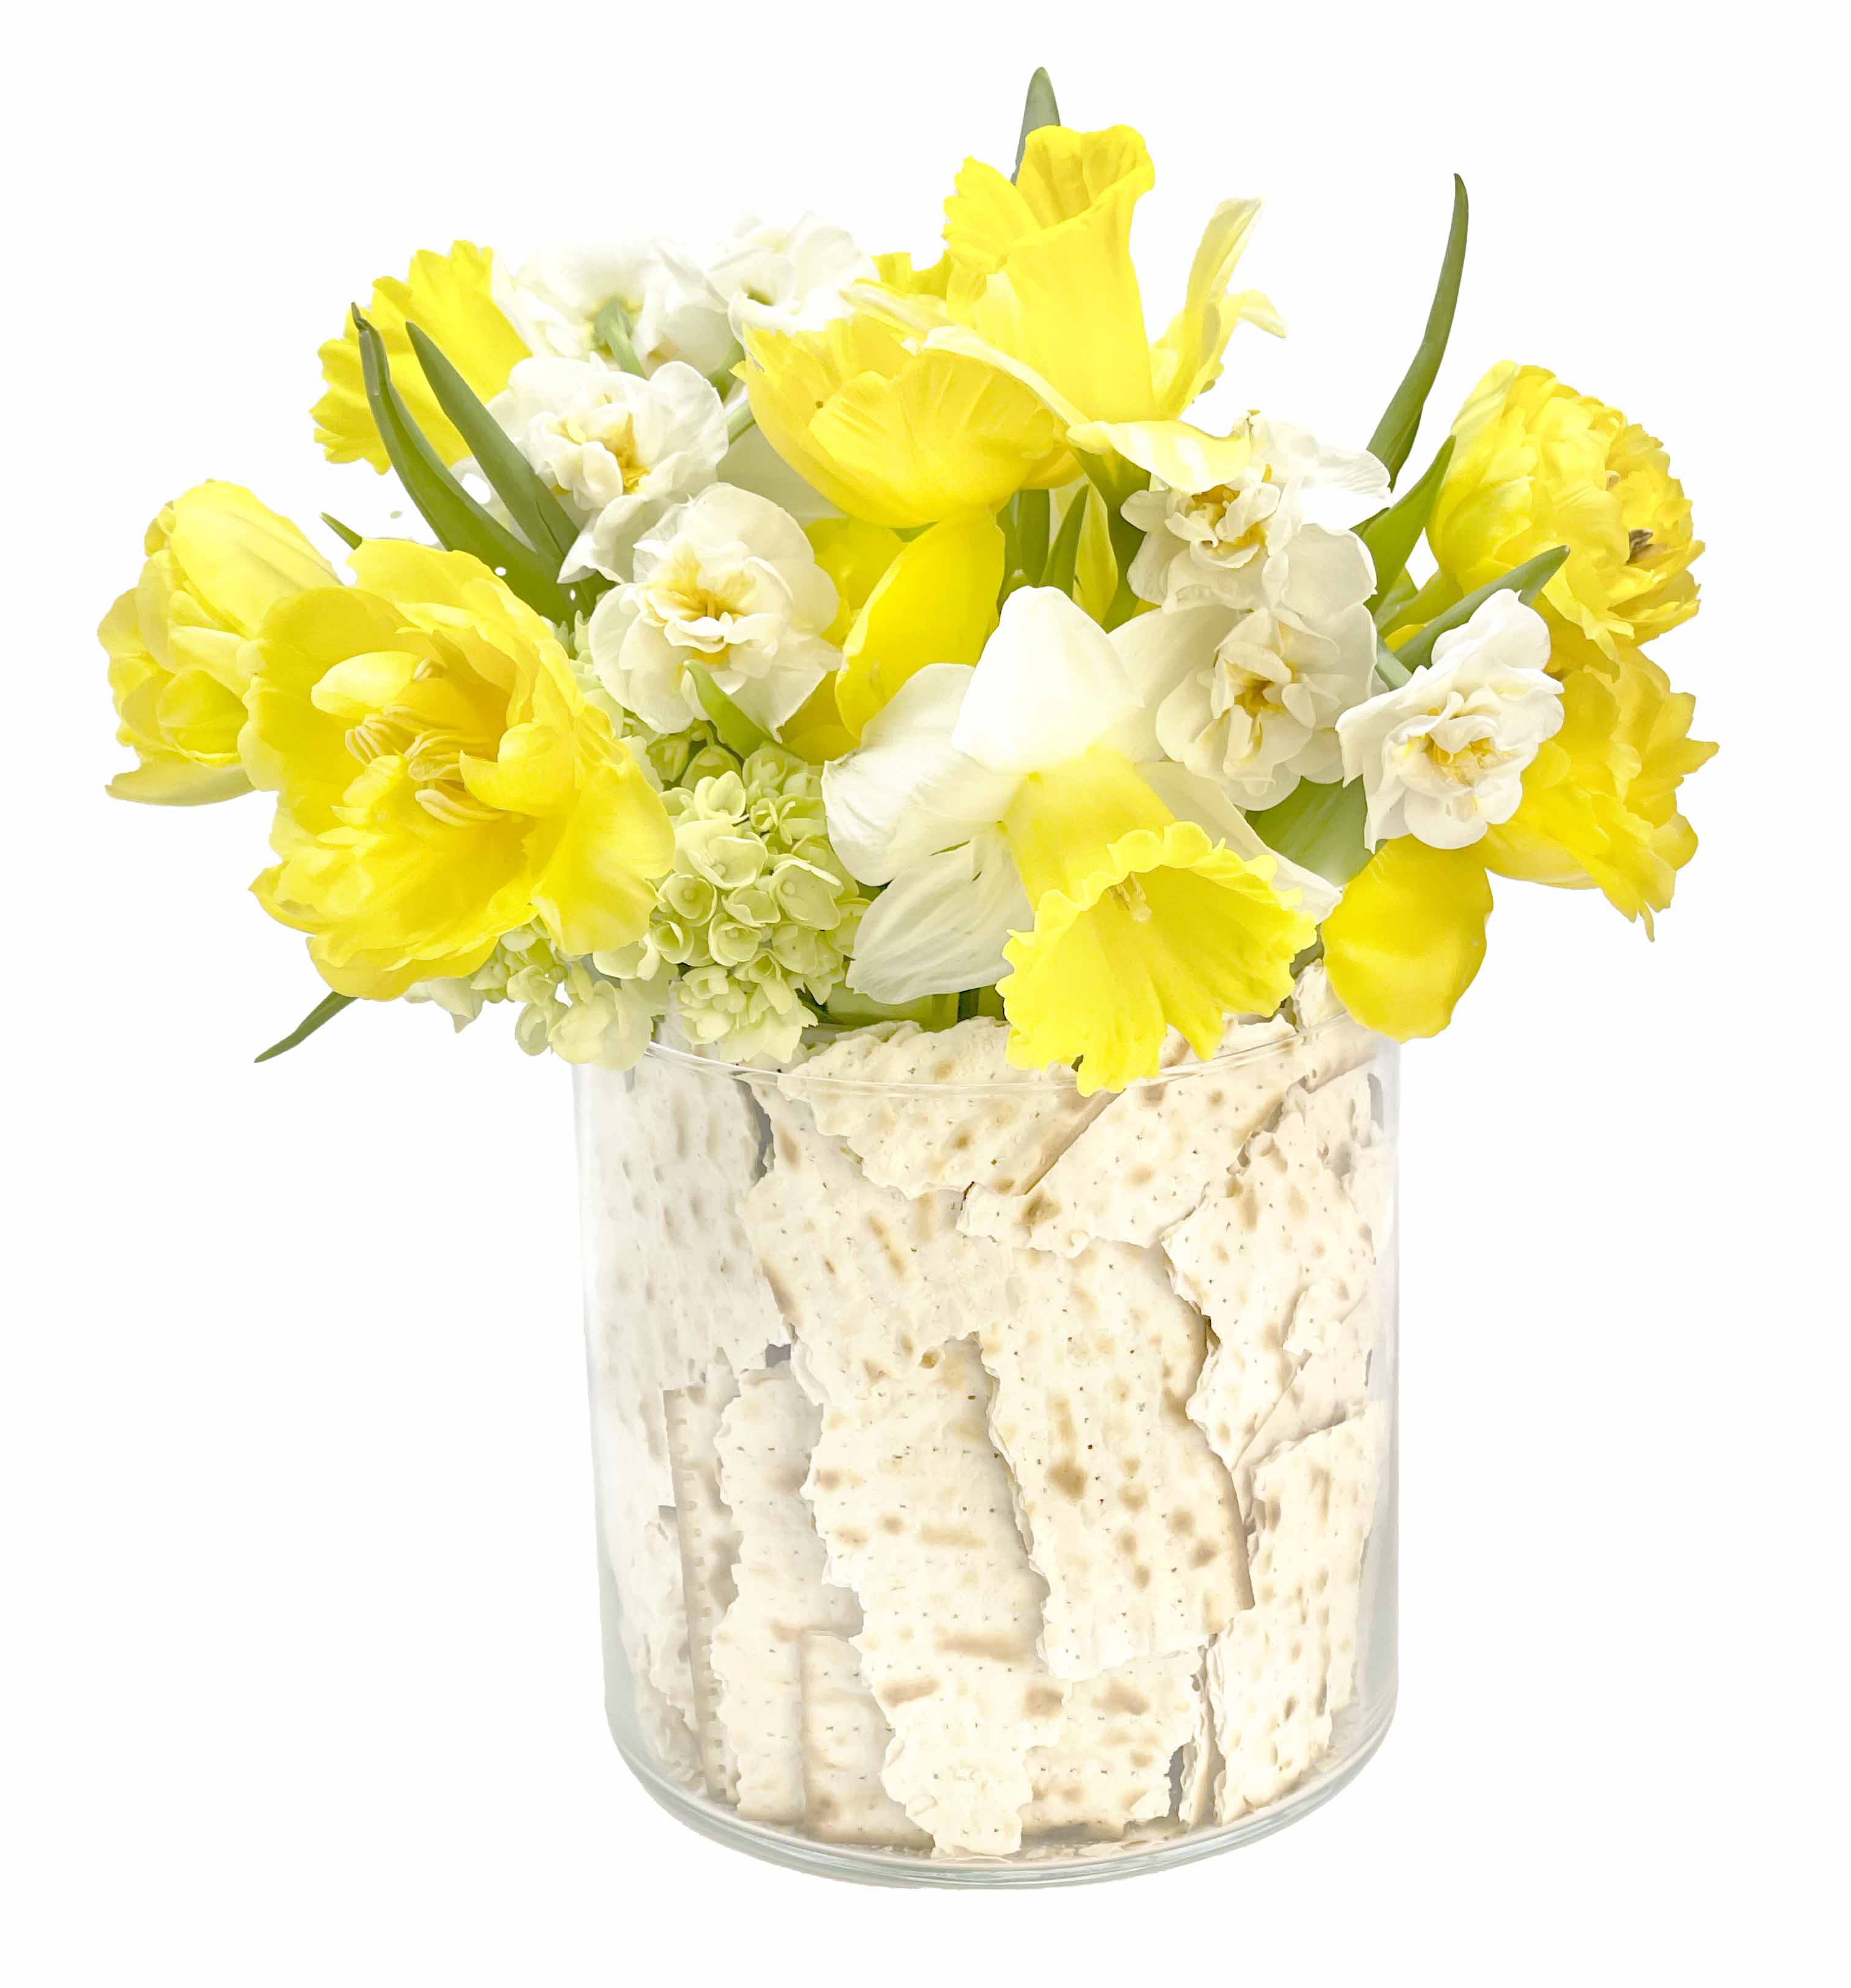 Passover Flower Centrepiece